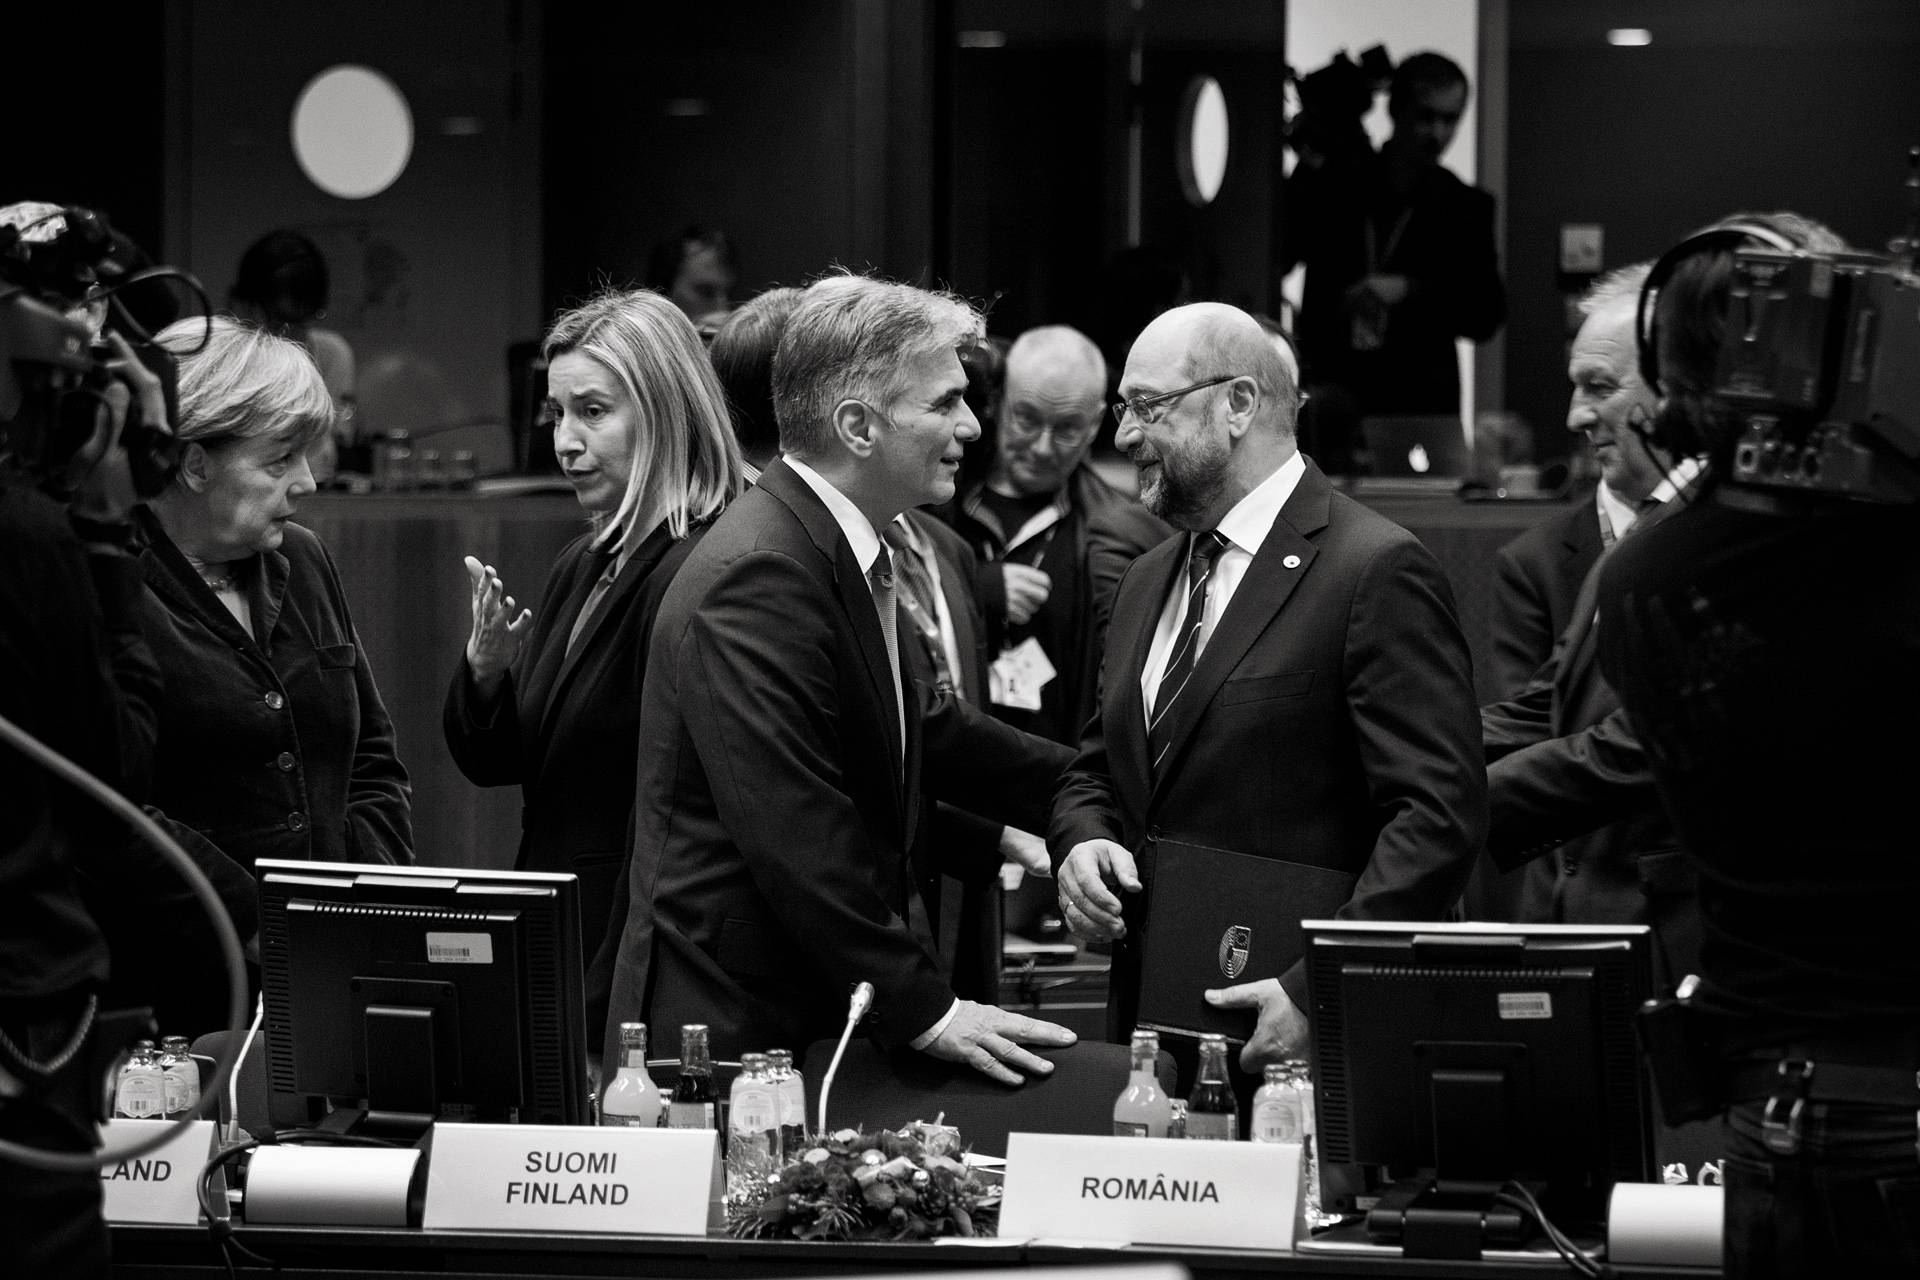 Kurz vor Sitzungsbeginn tauscht sich die deutsche Bundeskanzlerin Angela Merkel (l.) mit der Außenbeauftragten der Europäischen Kommission, Federica Mogherini aus, während der österreichische Bundeskanzler Werner Fayman (M.) den Präsidenten des Europäischen Parlaments Martin Schulz (r.) begrüßt.